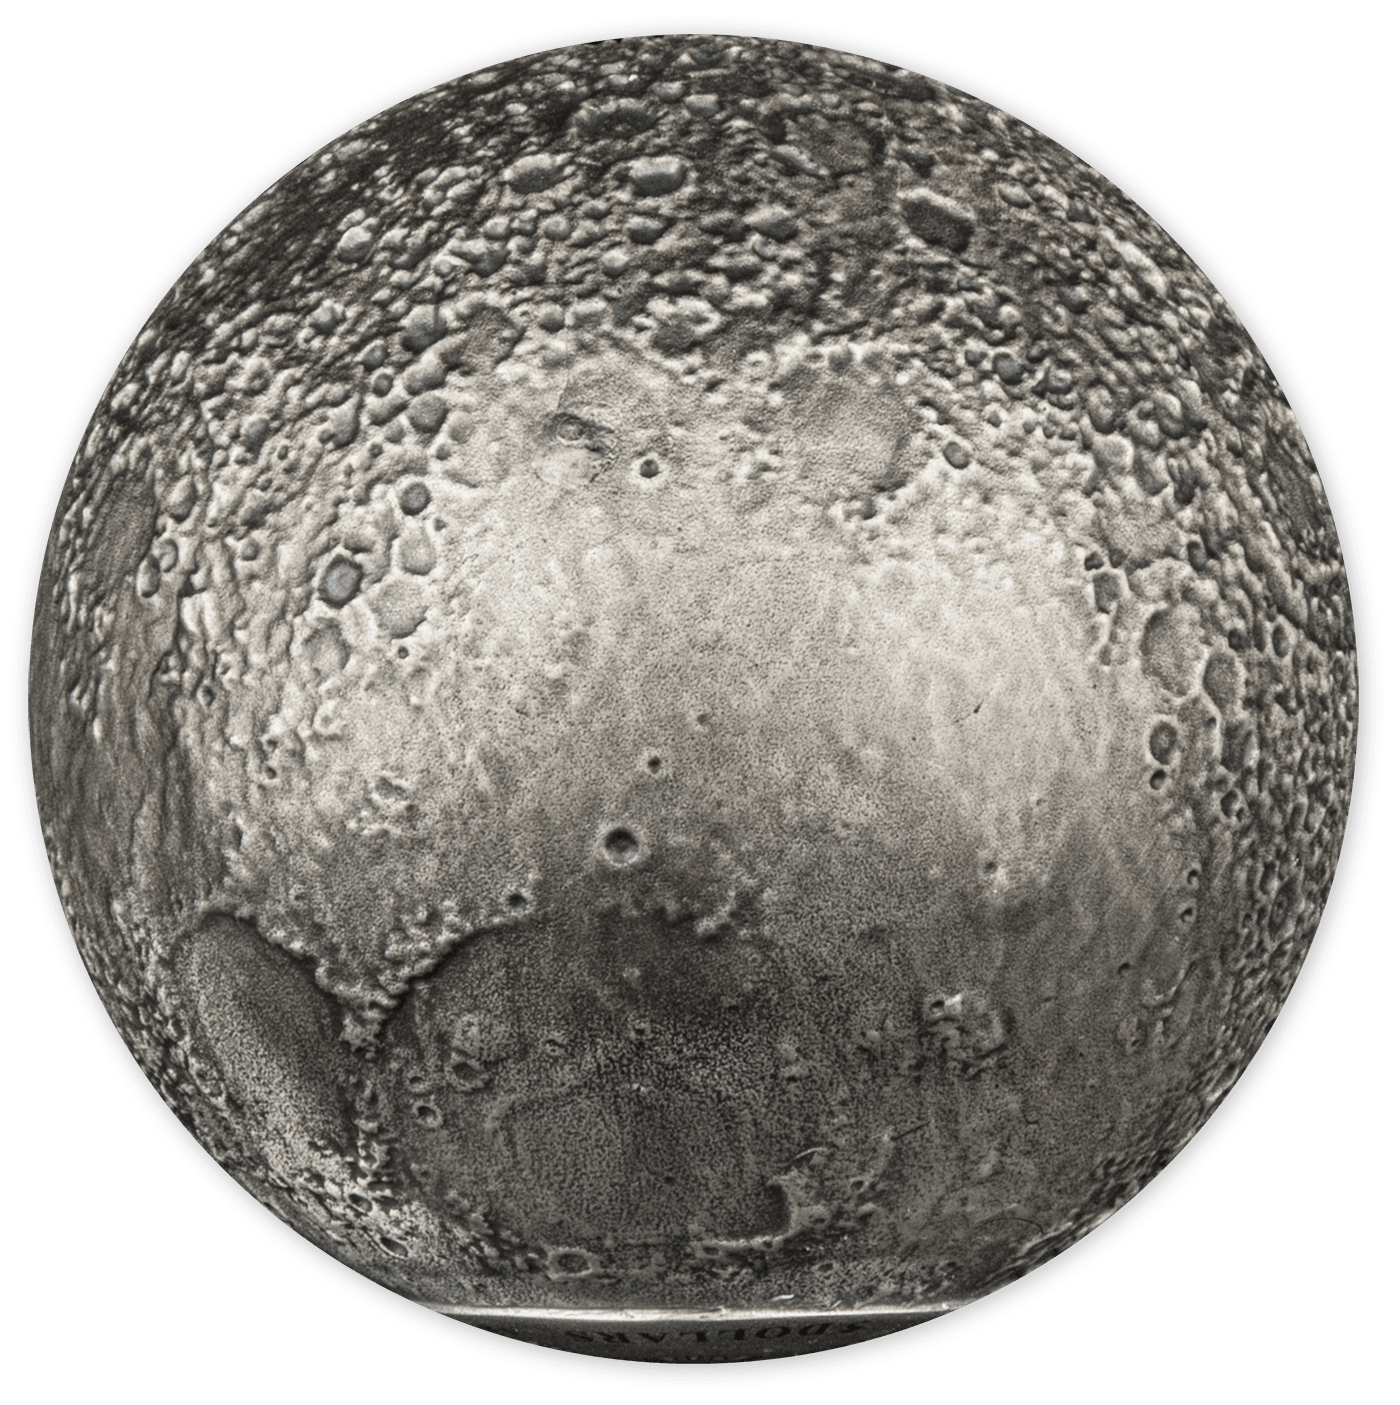 MOON SPHERICAL 3D Planet 3 Oz Silver Coin $5 Barbados 2023 - PARTHAVA COIN